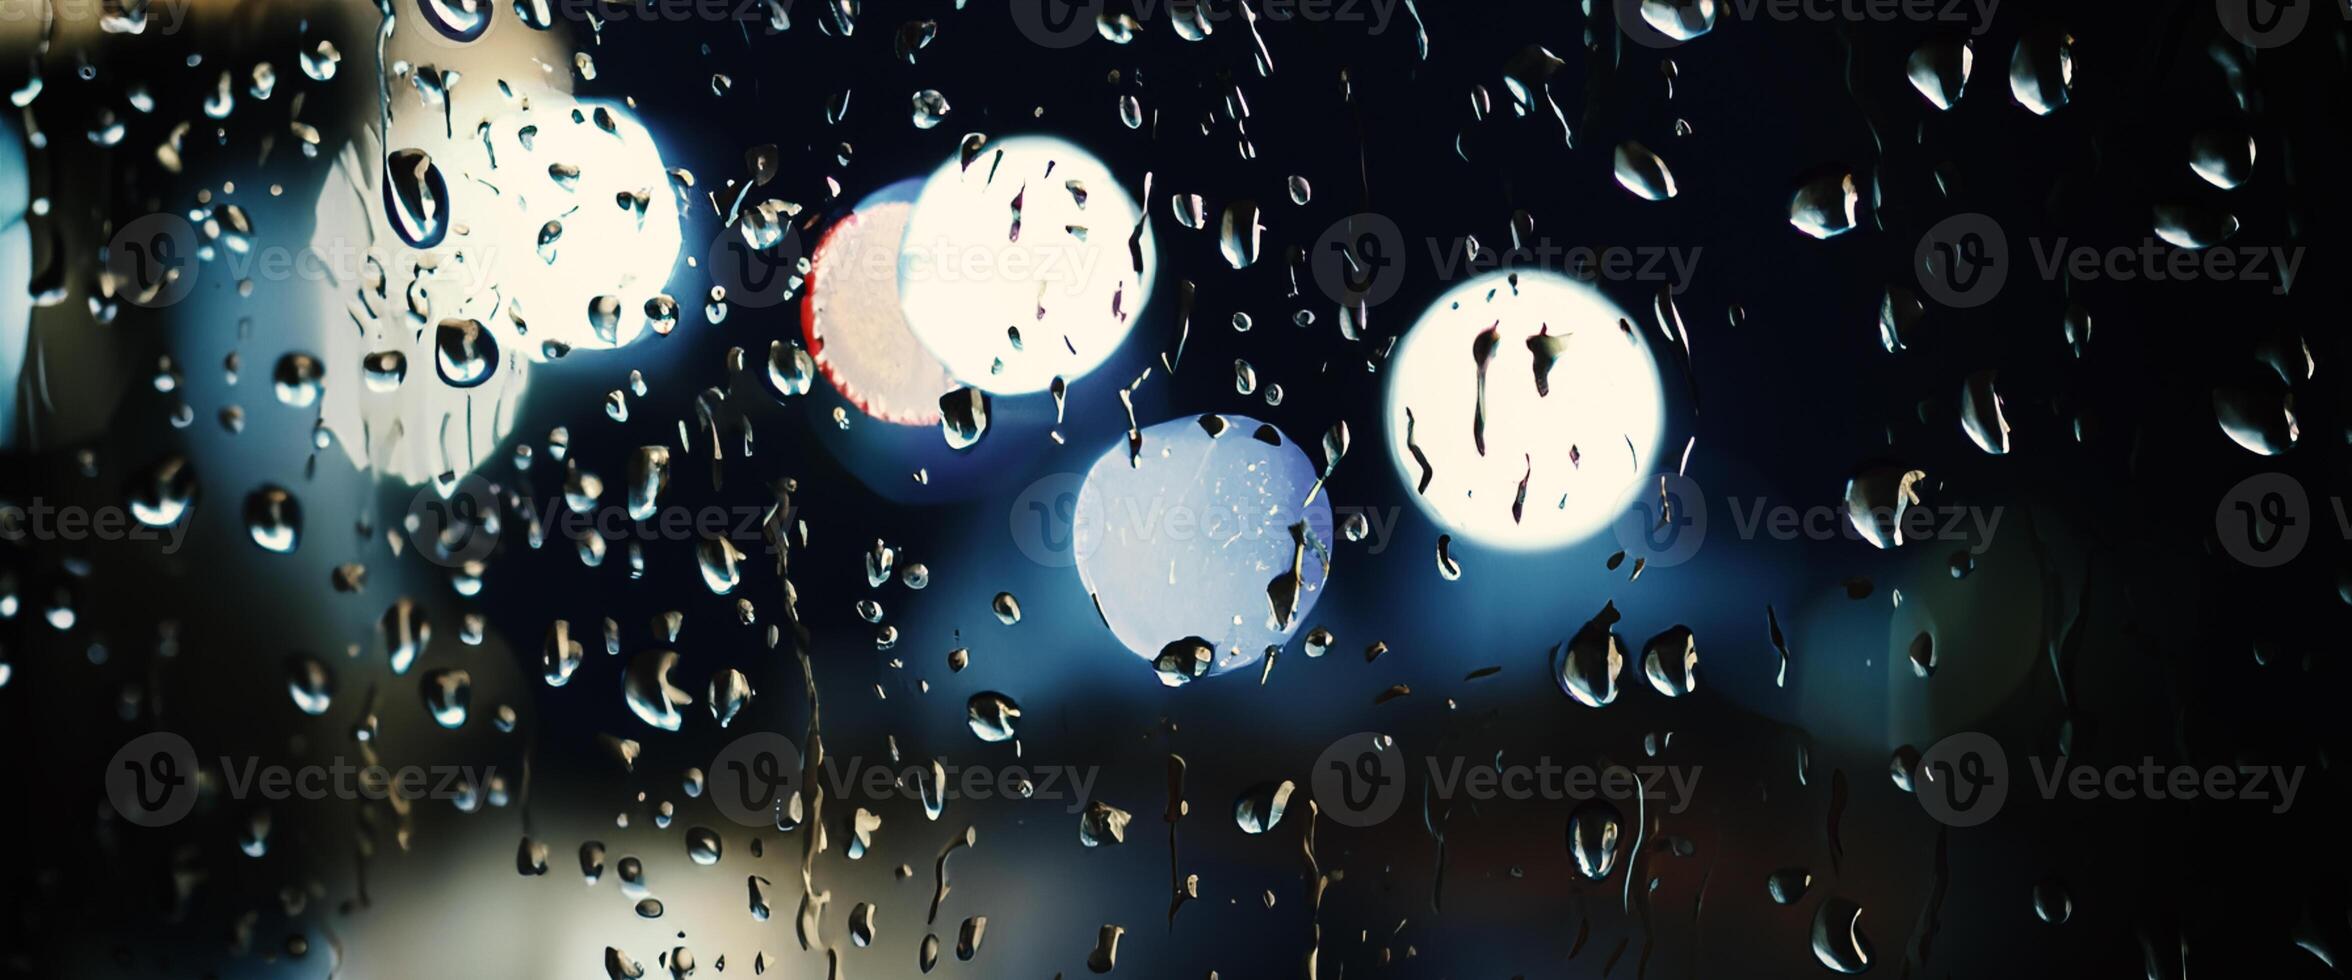 pluie laissez tomber sur fenêtre verre de café magasin et floue ville la vie Contexte. pluvieux saison et floue gens ville journée la vie ou bokeh nuit lumières à l'extérieur la fenêtre. café magasin fenêtre couvert avec pluie l'eau photo